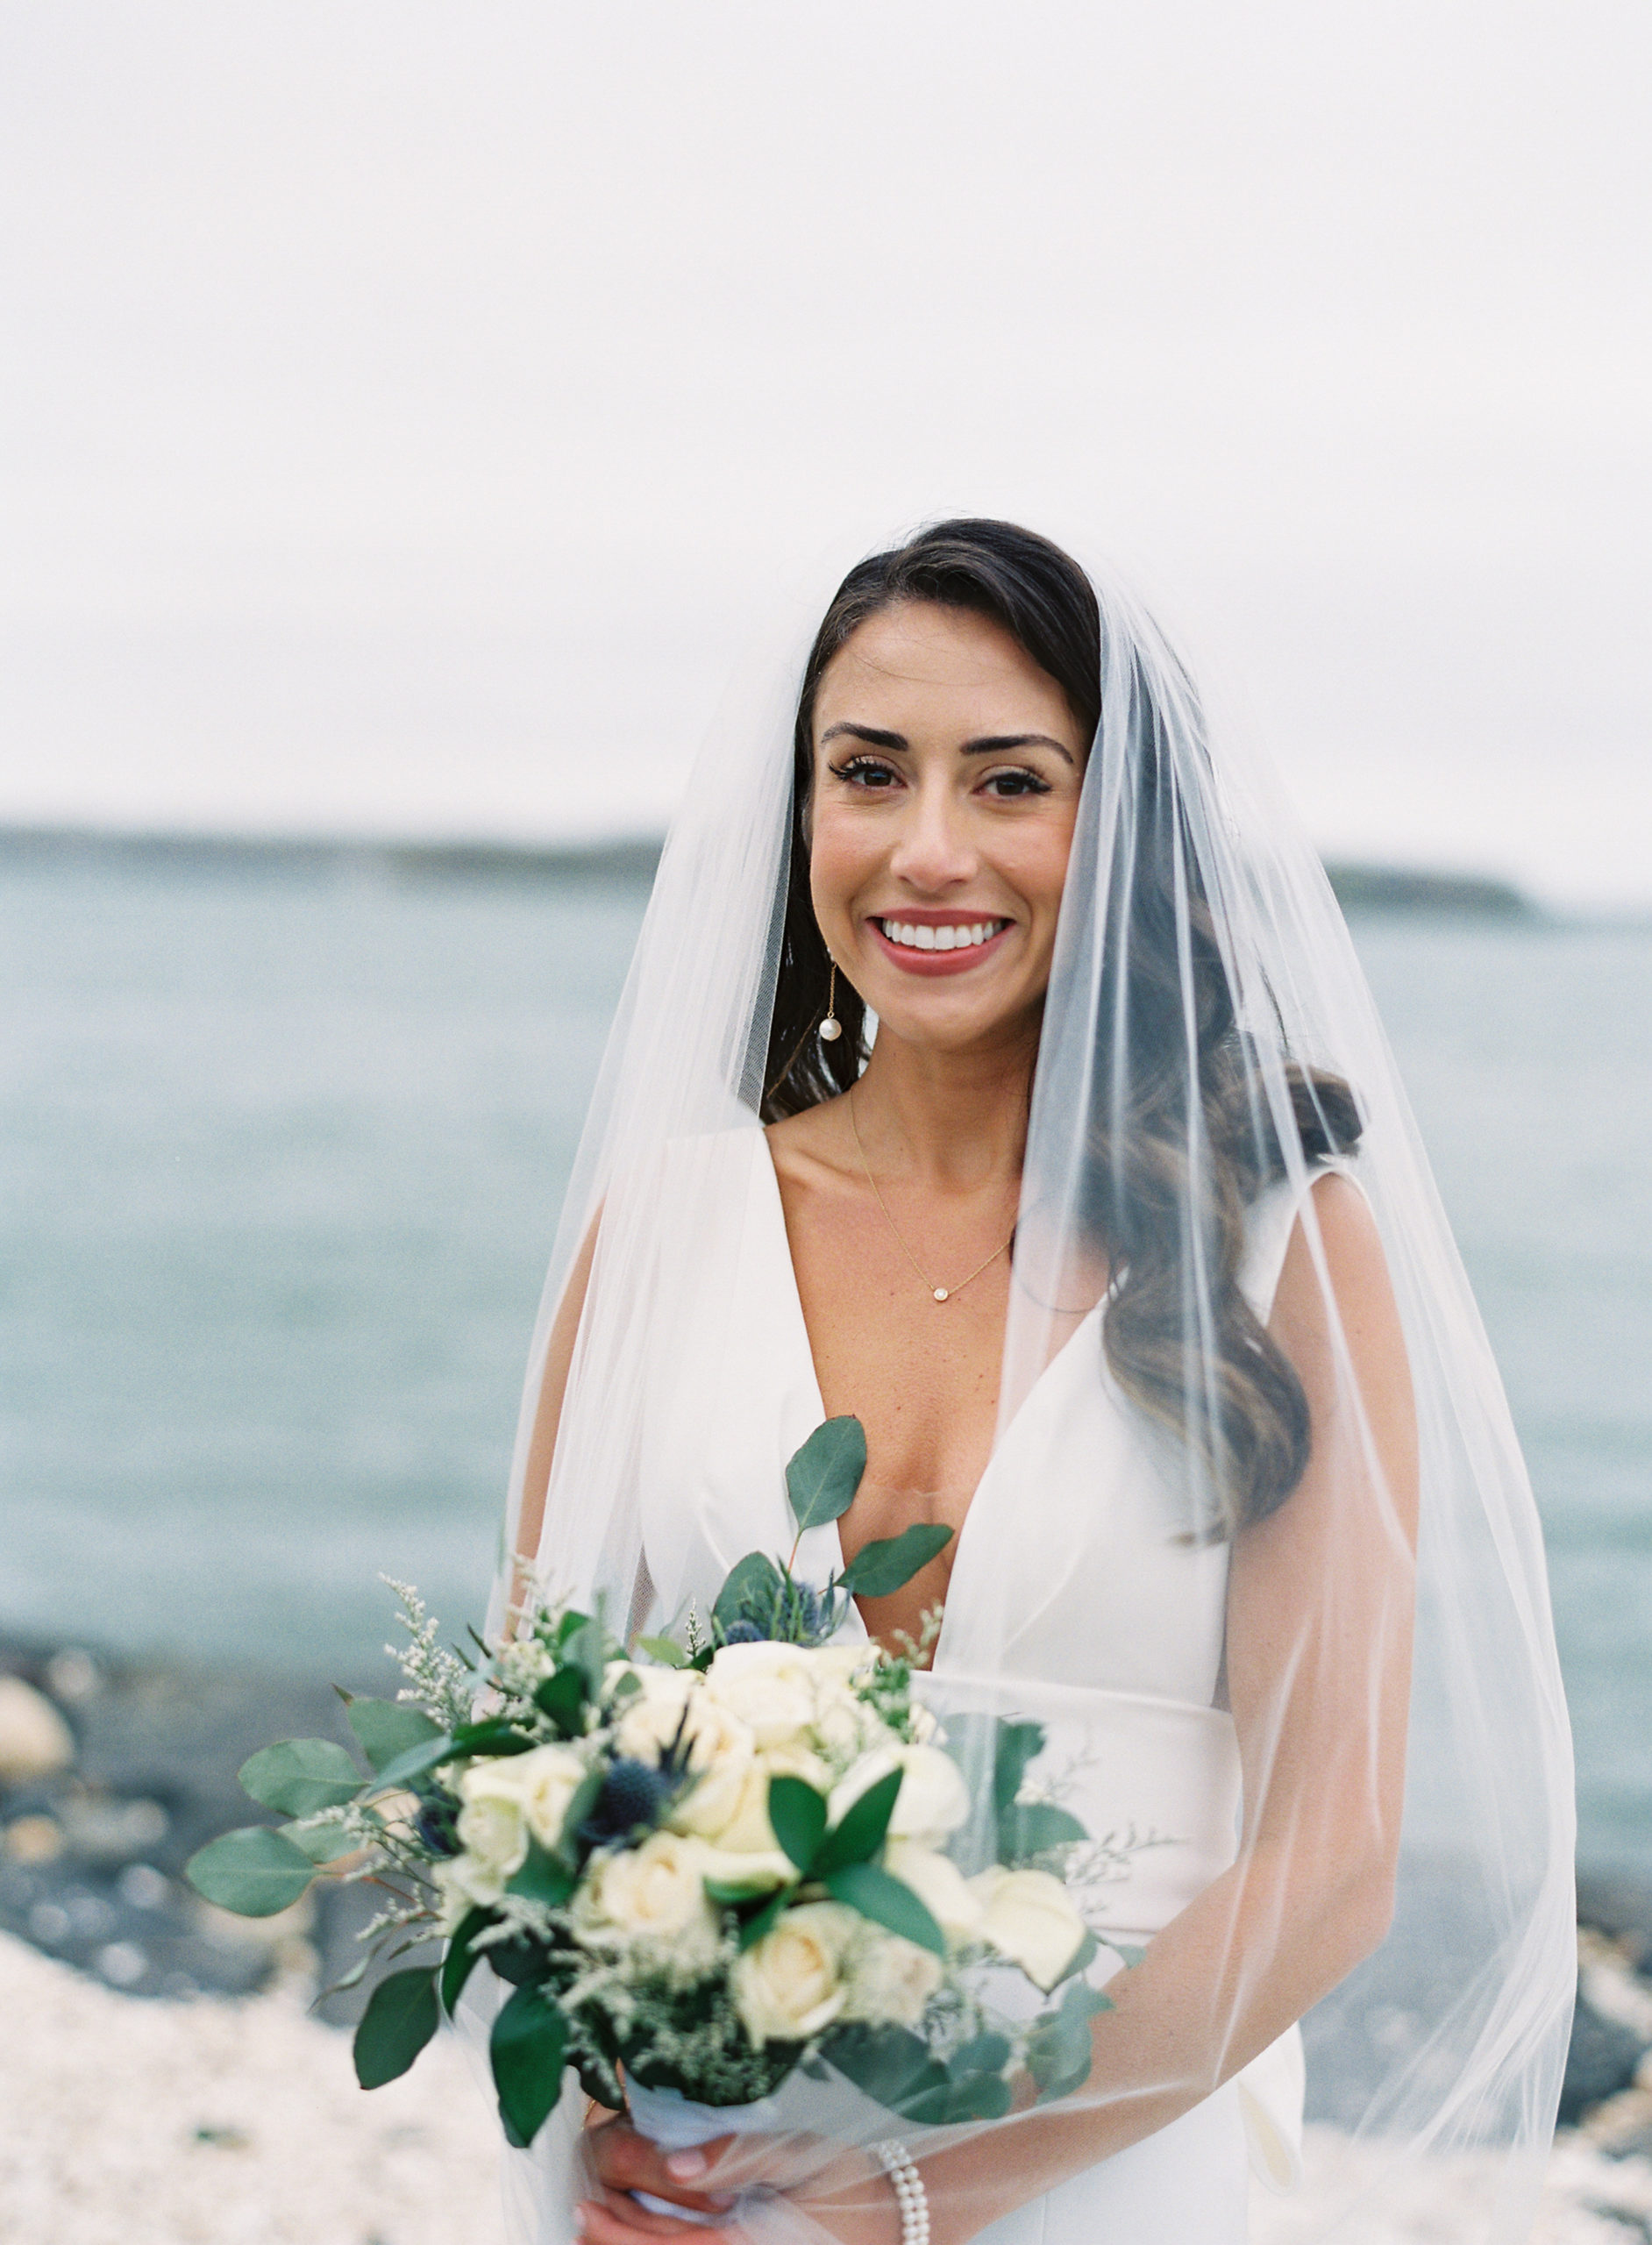 Peconic Bay Yacht Club Wedding, Coastal NY Wedding, NY Wedding Photographer, Anna Gianfrate Photography